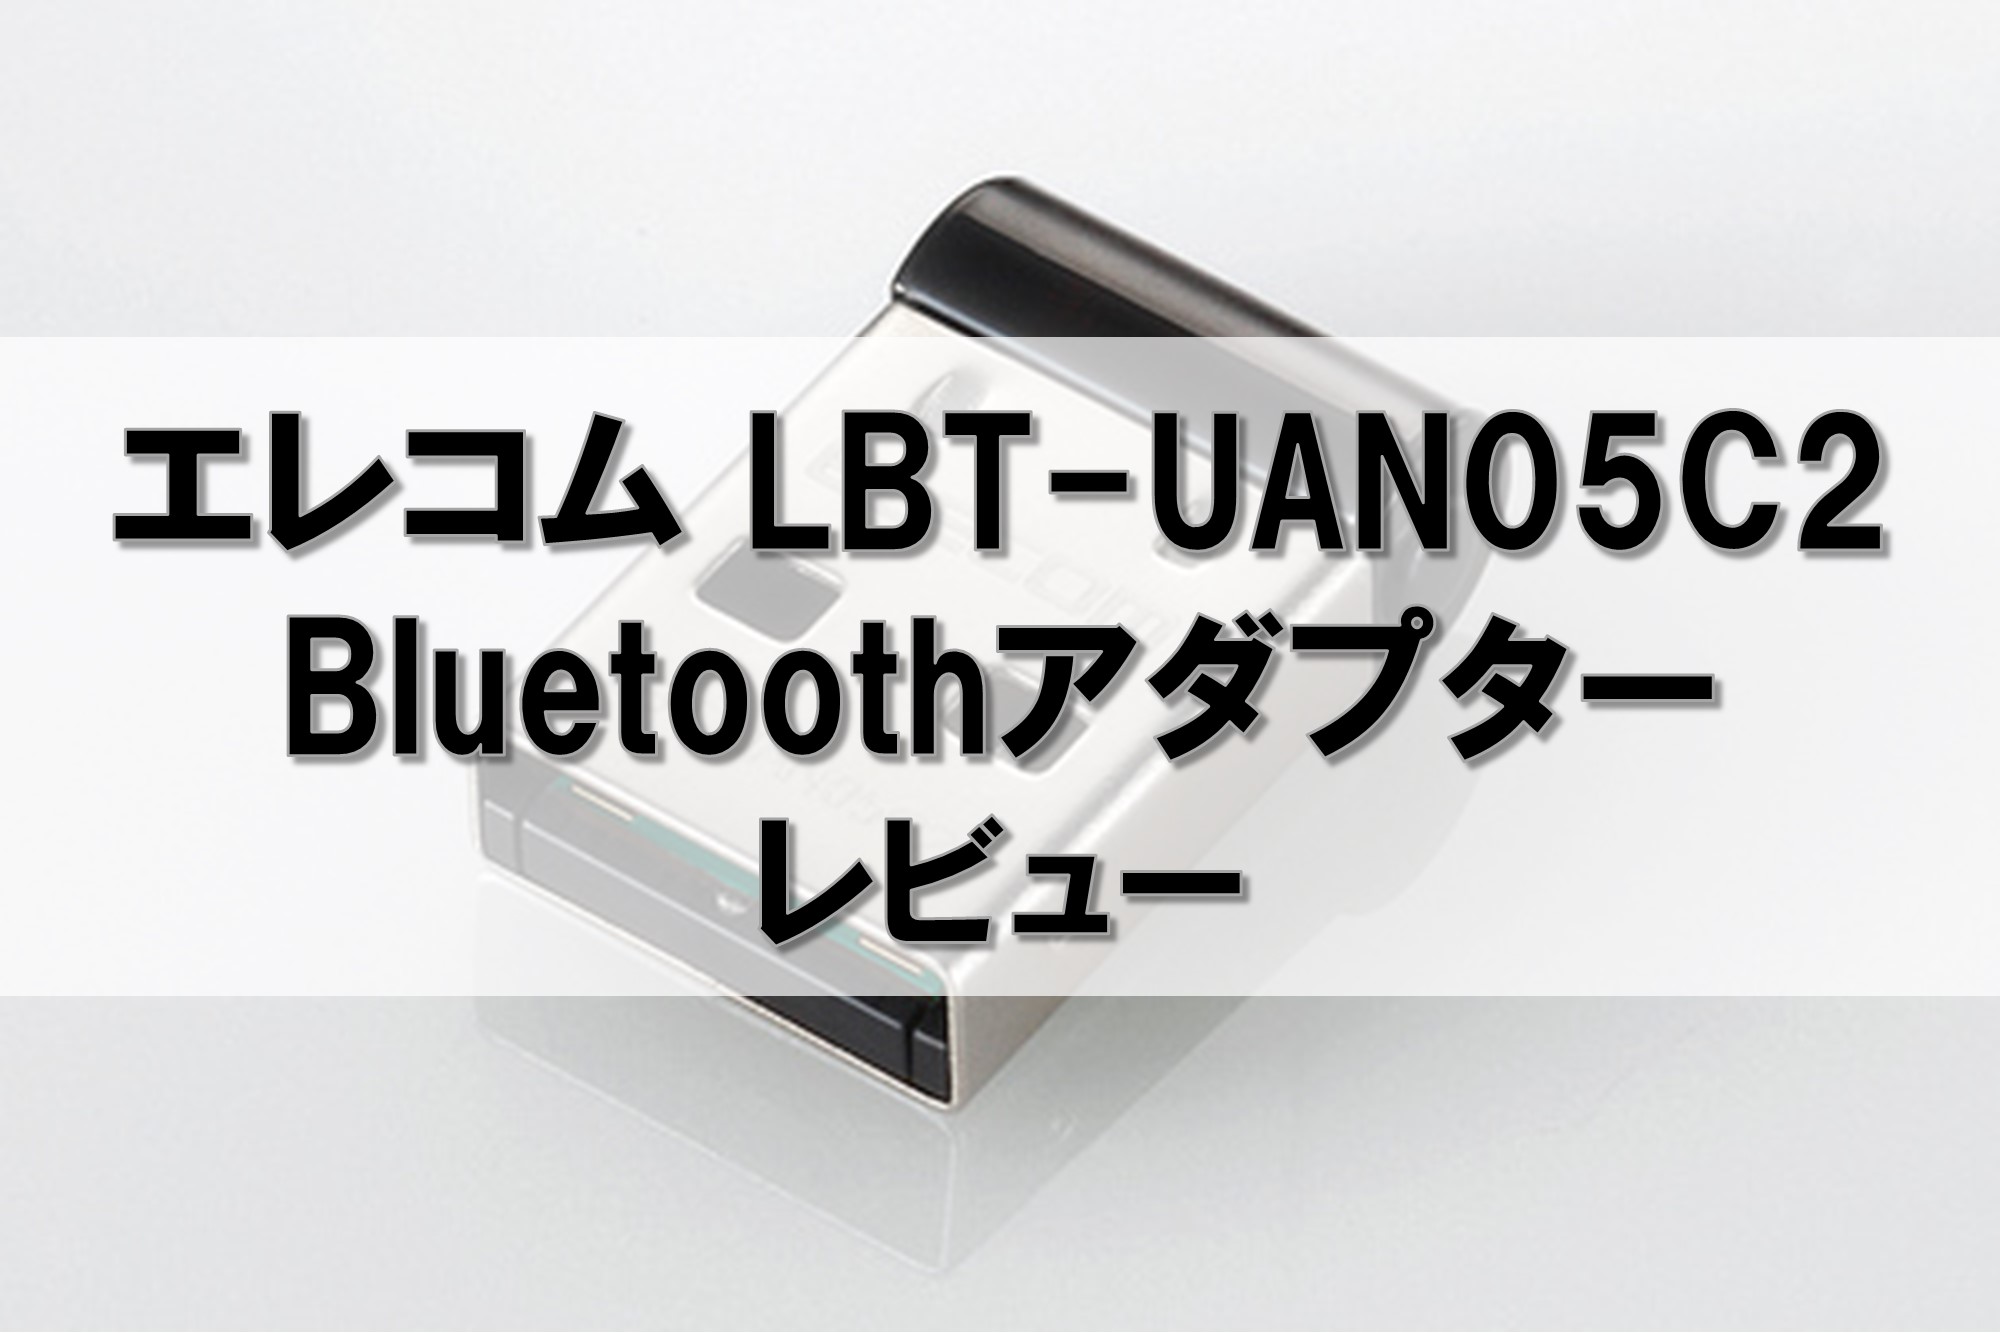 エレコム Bluetooth USBアダプタ LBT-UAN05C2 レビュー